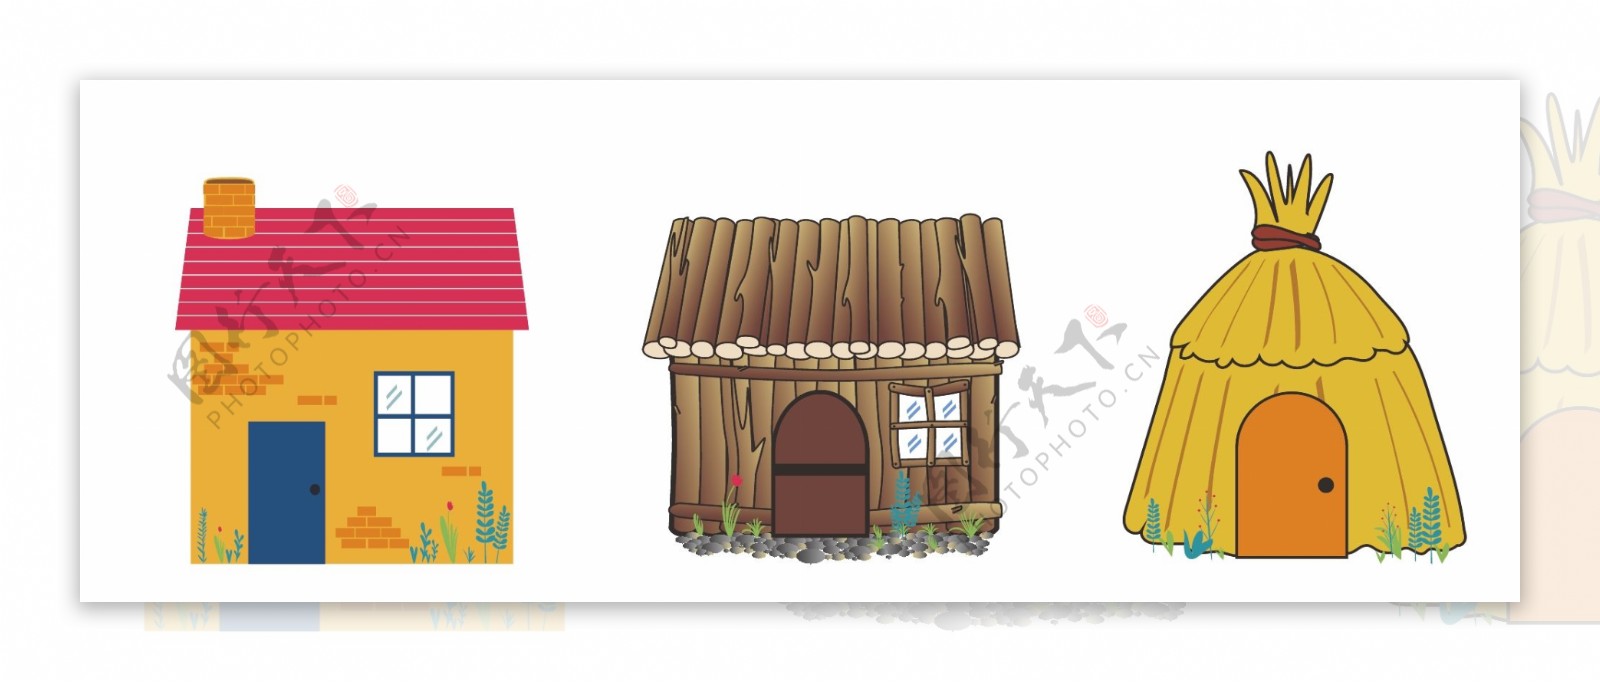 三只小猪盖房子草屋木屋砖房